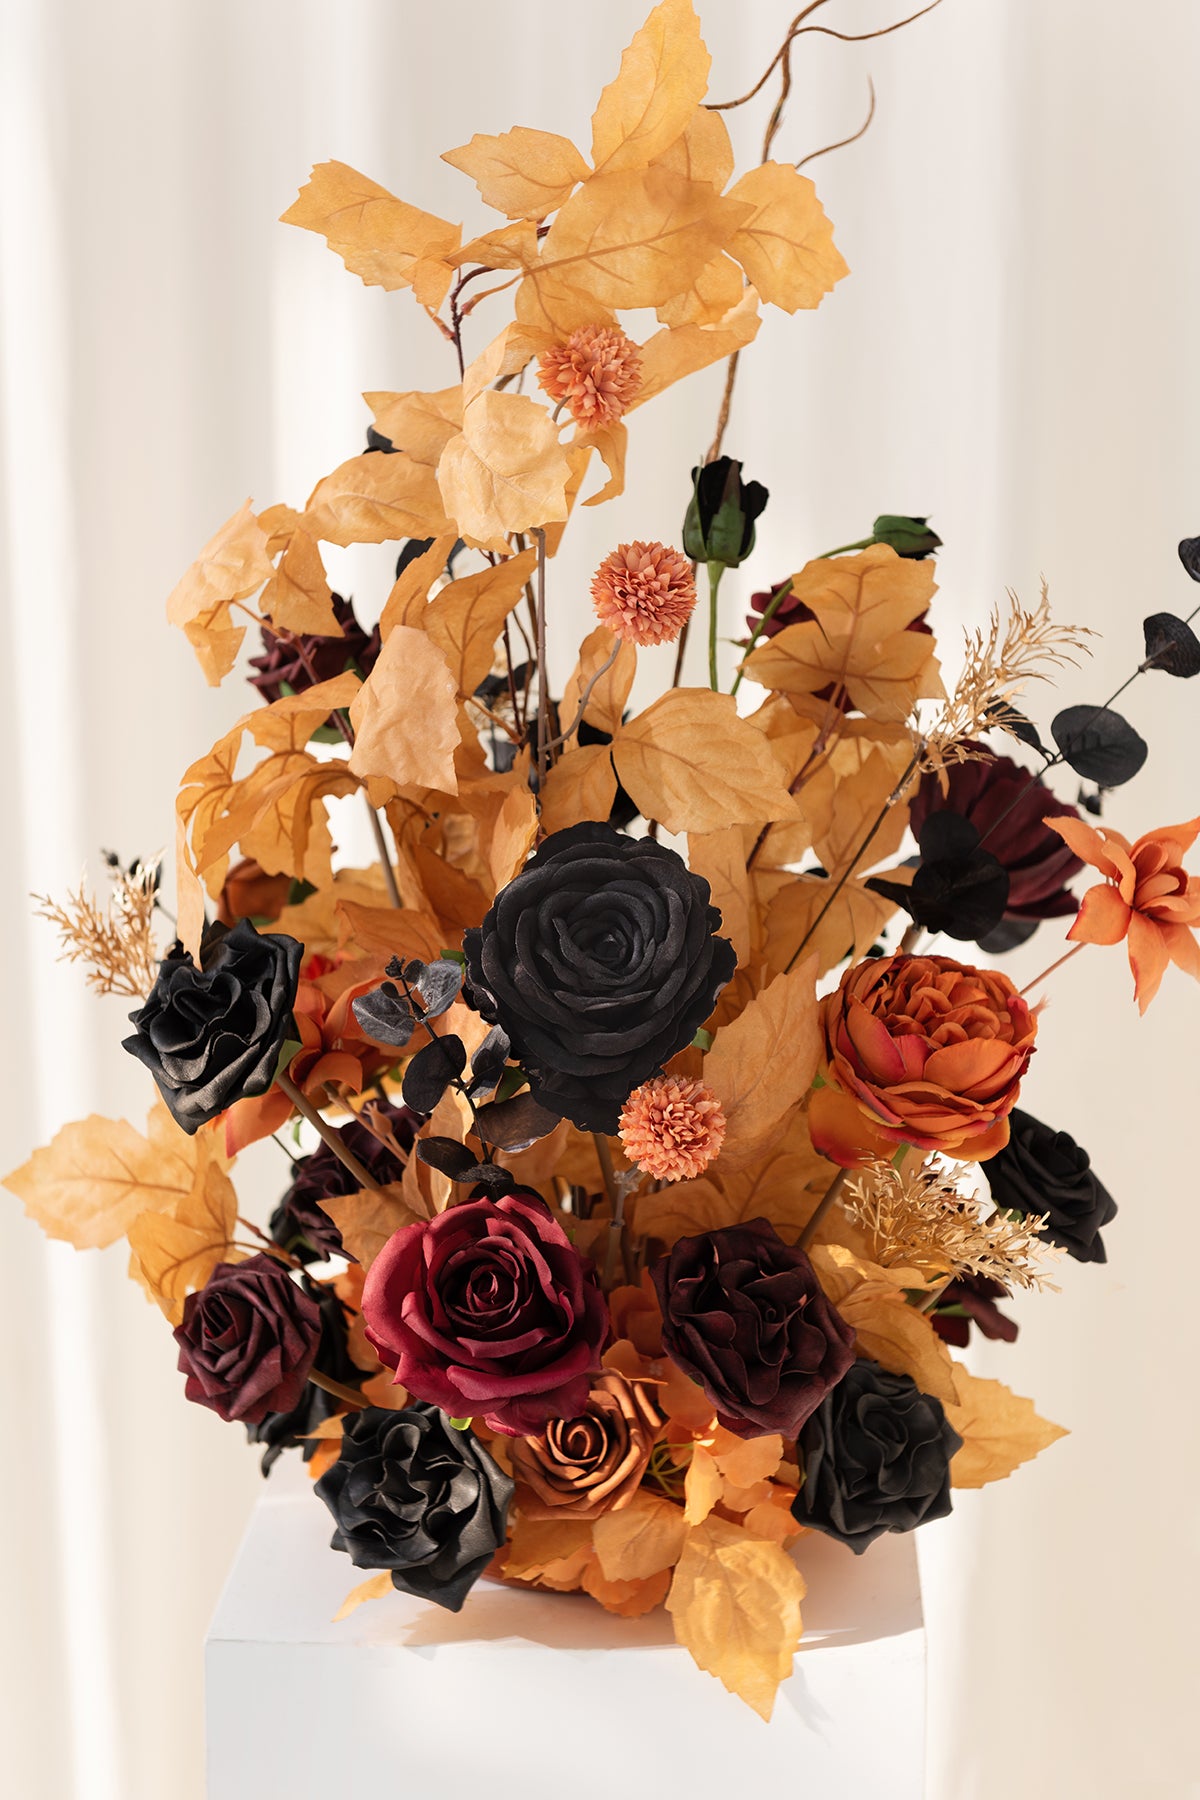 Oversized Free-Standing Ground Flower Arrangements in Black & Pumpkin Orange